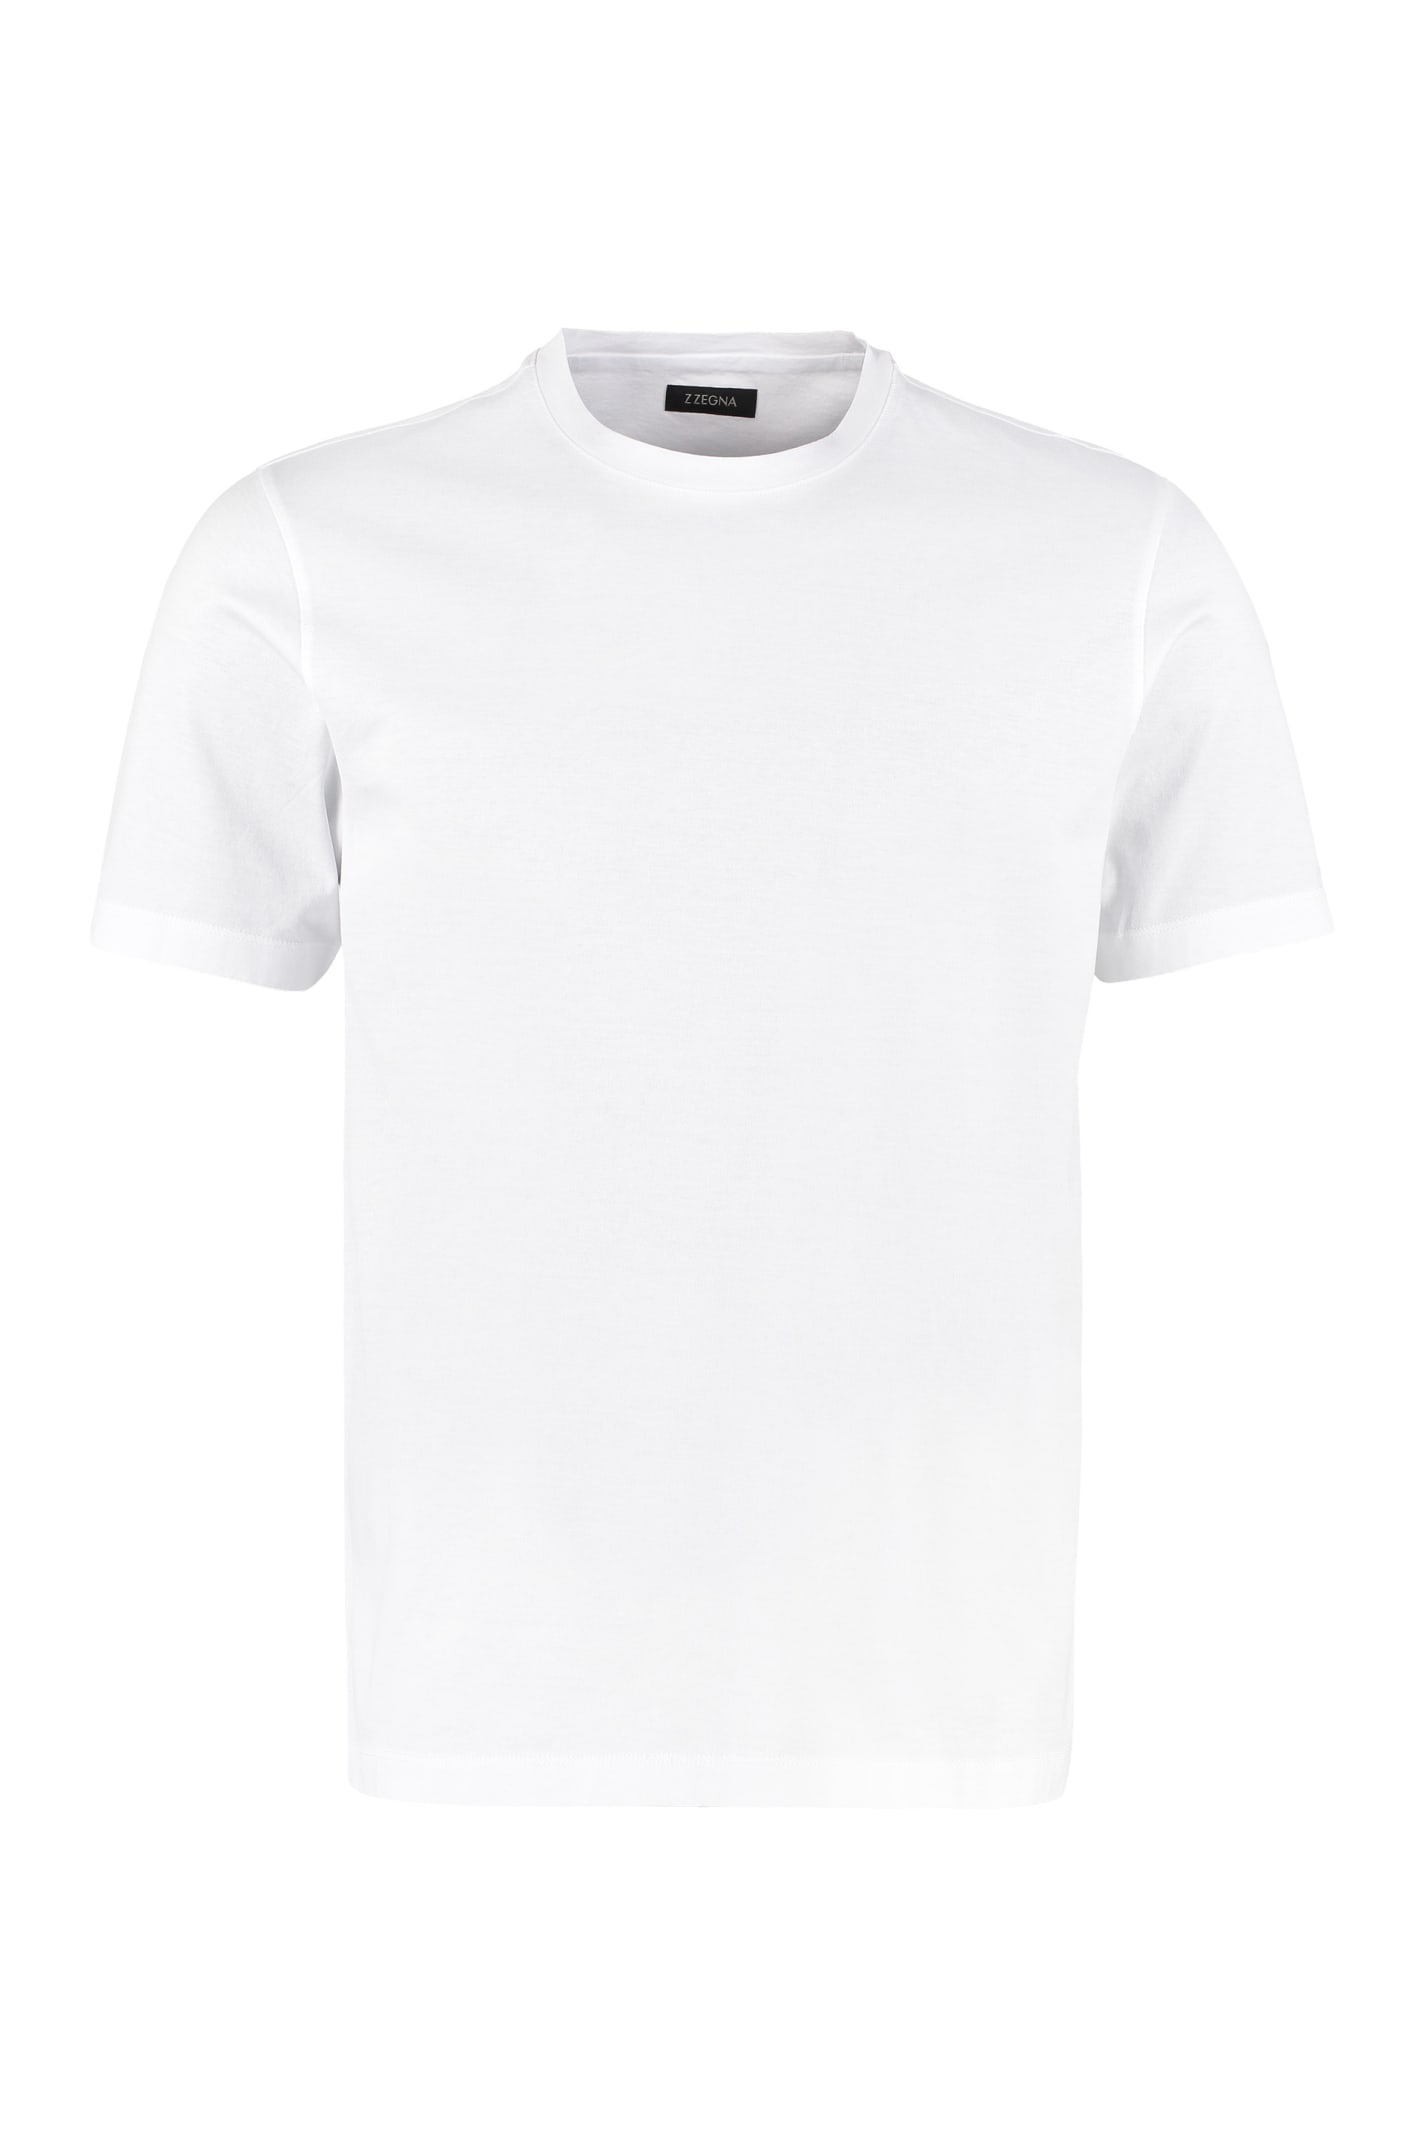 Z Zegna Cotton Crew-neck T-shirt